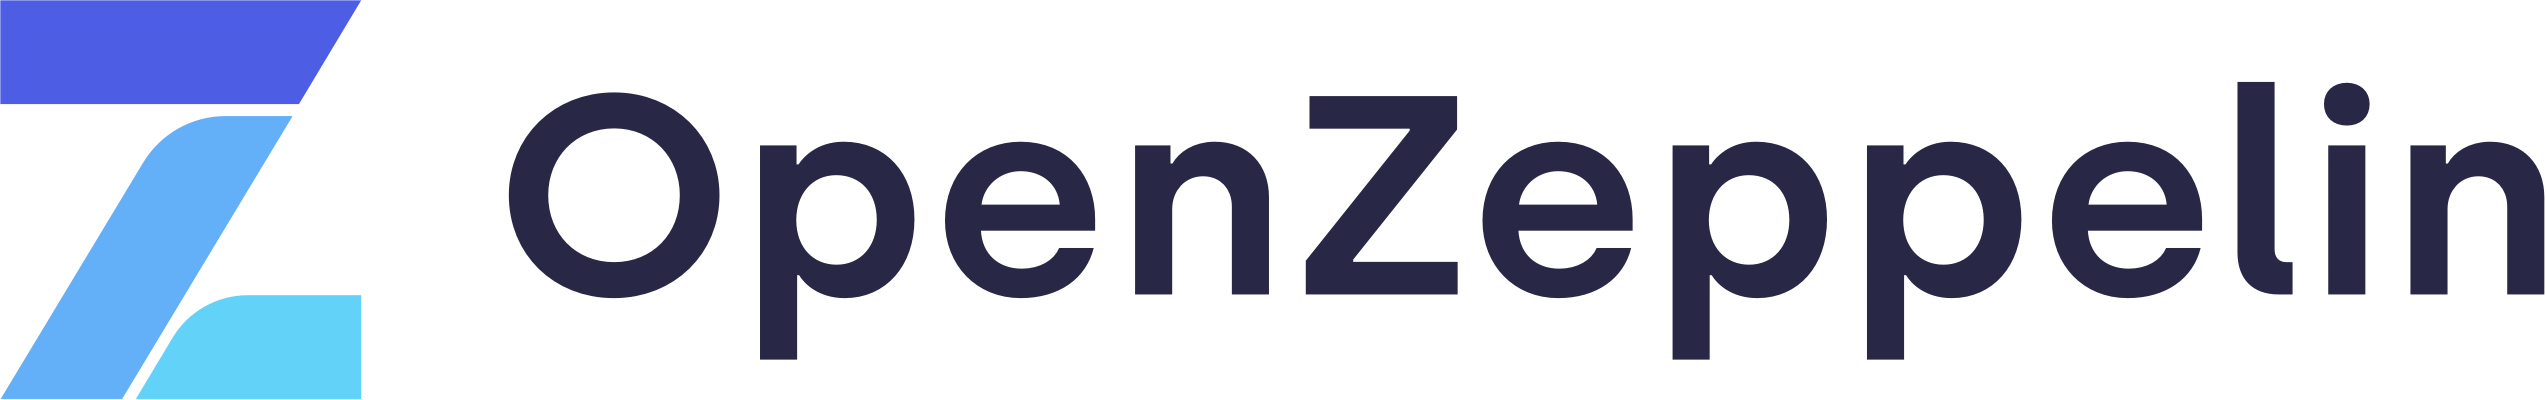 openzeppelin-by-logo